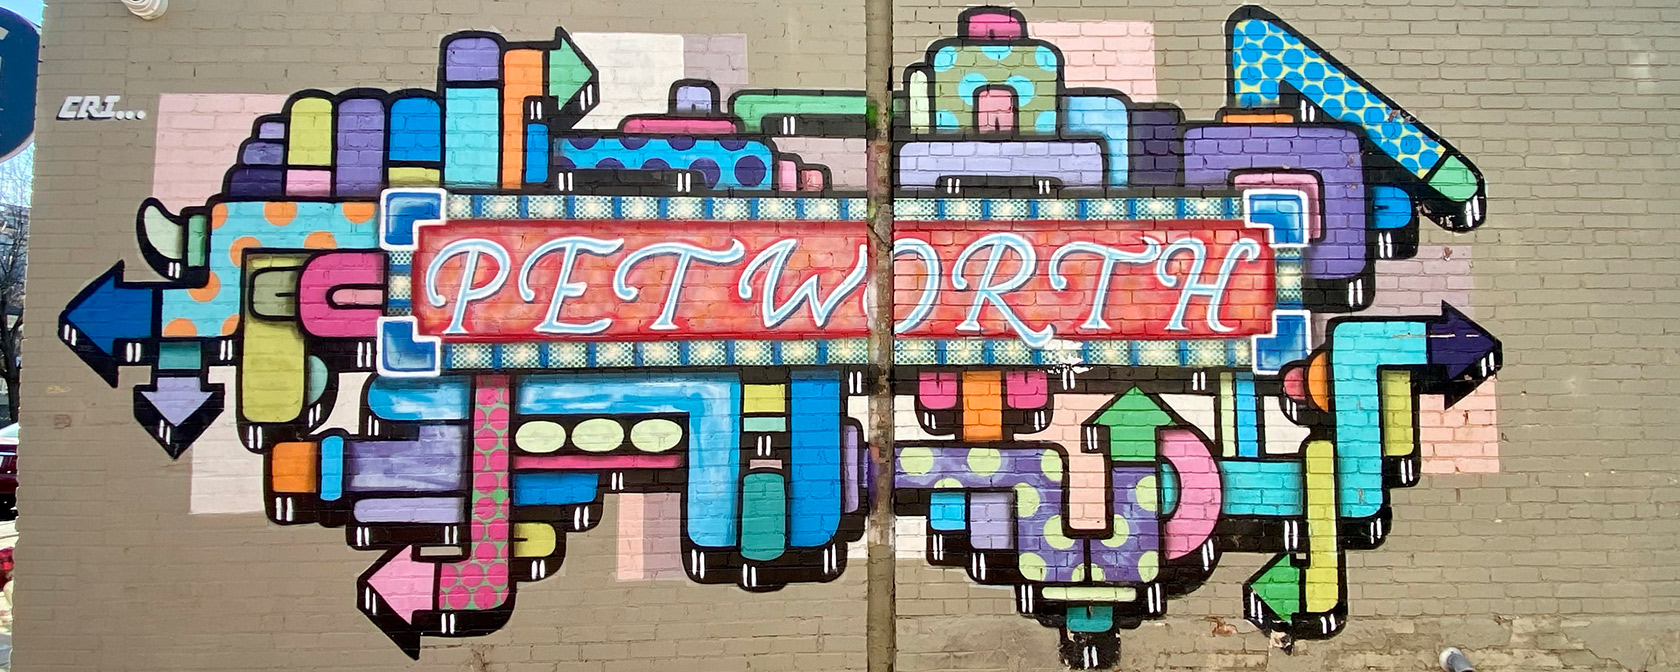 Petworth murale